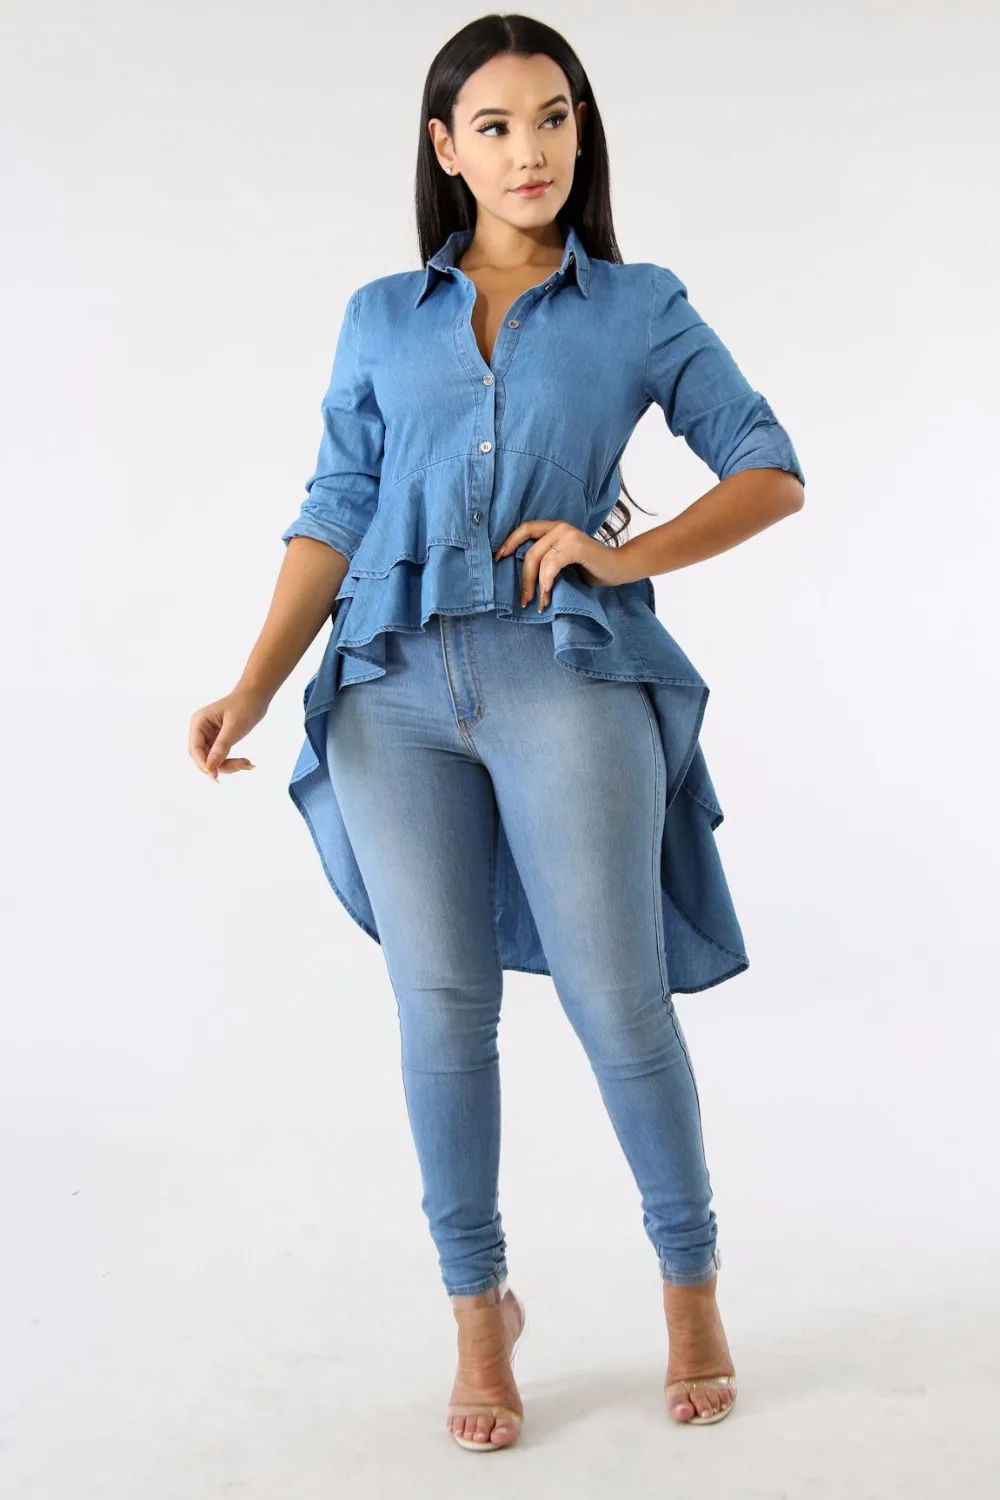 Повседневная Длинная Джинсовая блузка с двойными оборками на подоле, асимметричная синяя рубашка с отложным воротником и пуговицами, джинс... от AliExpress WW